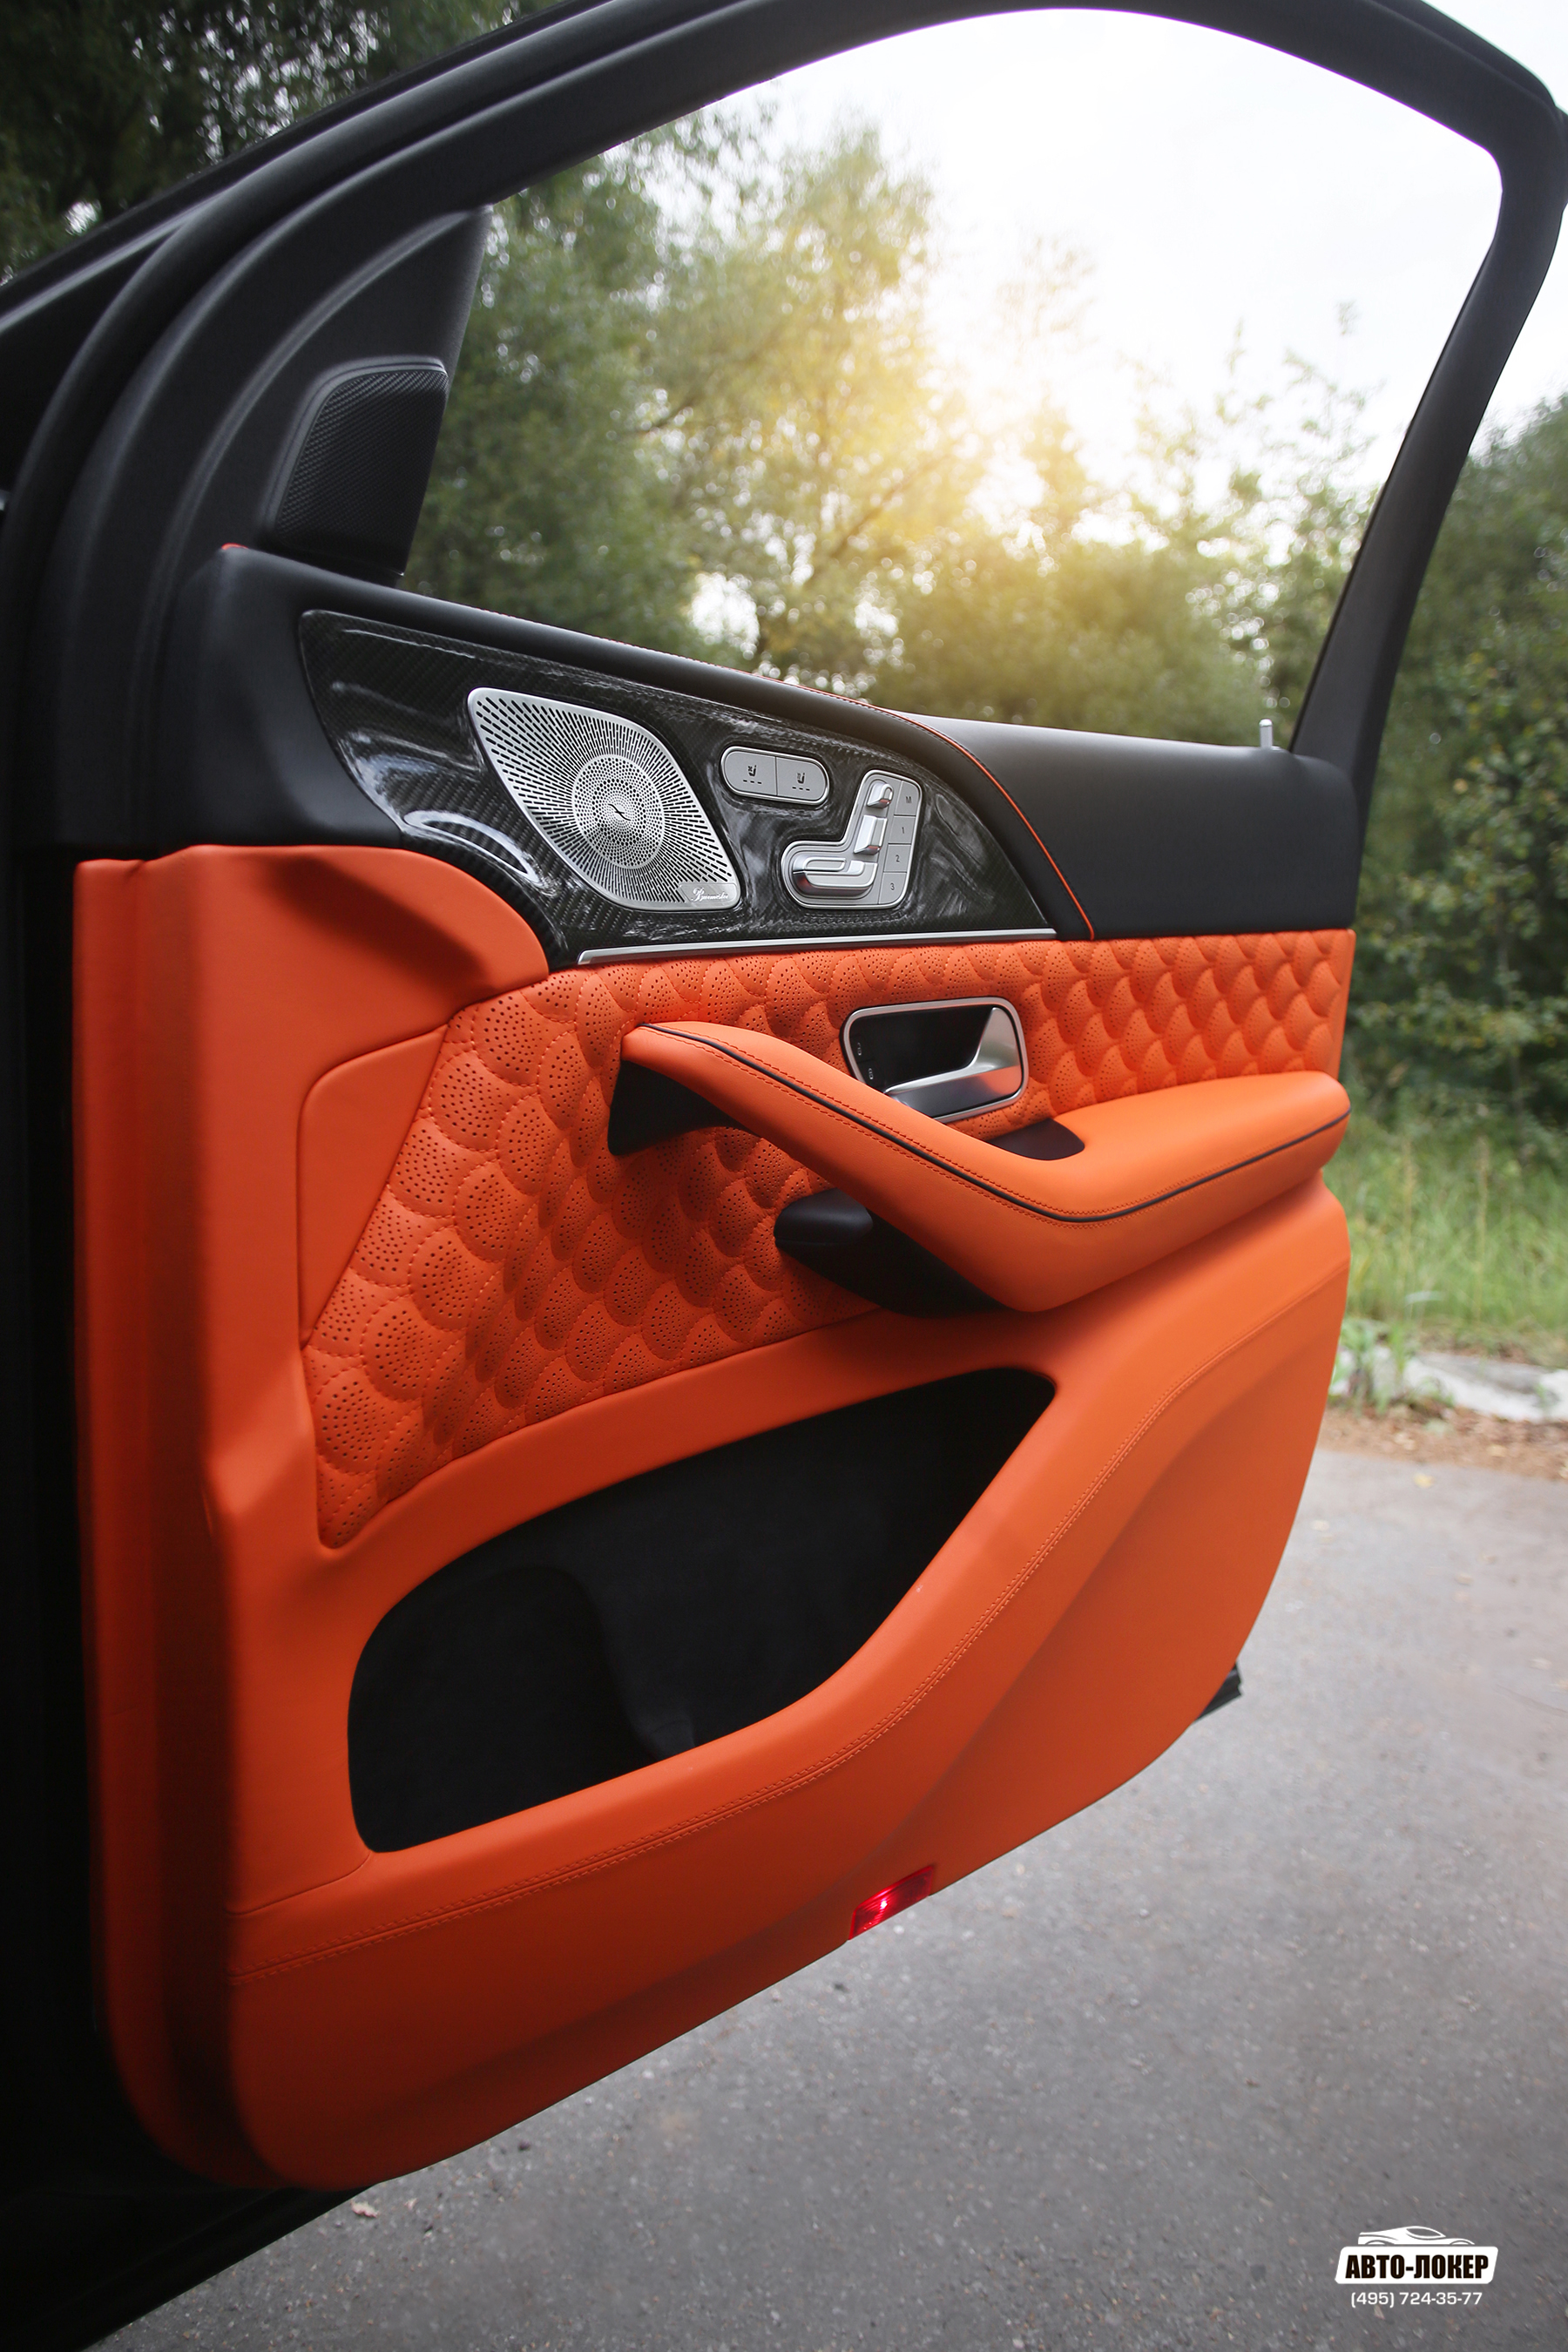 Перетяжка дверей салона Mercedes GLS (X167) оранжевой кожей фирменными стежками в стиле Brabus